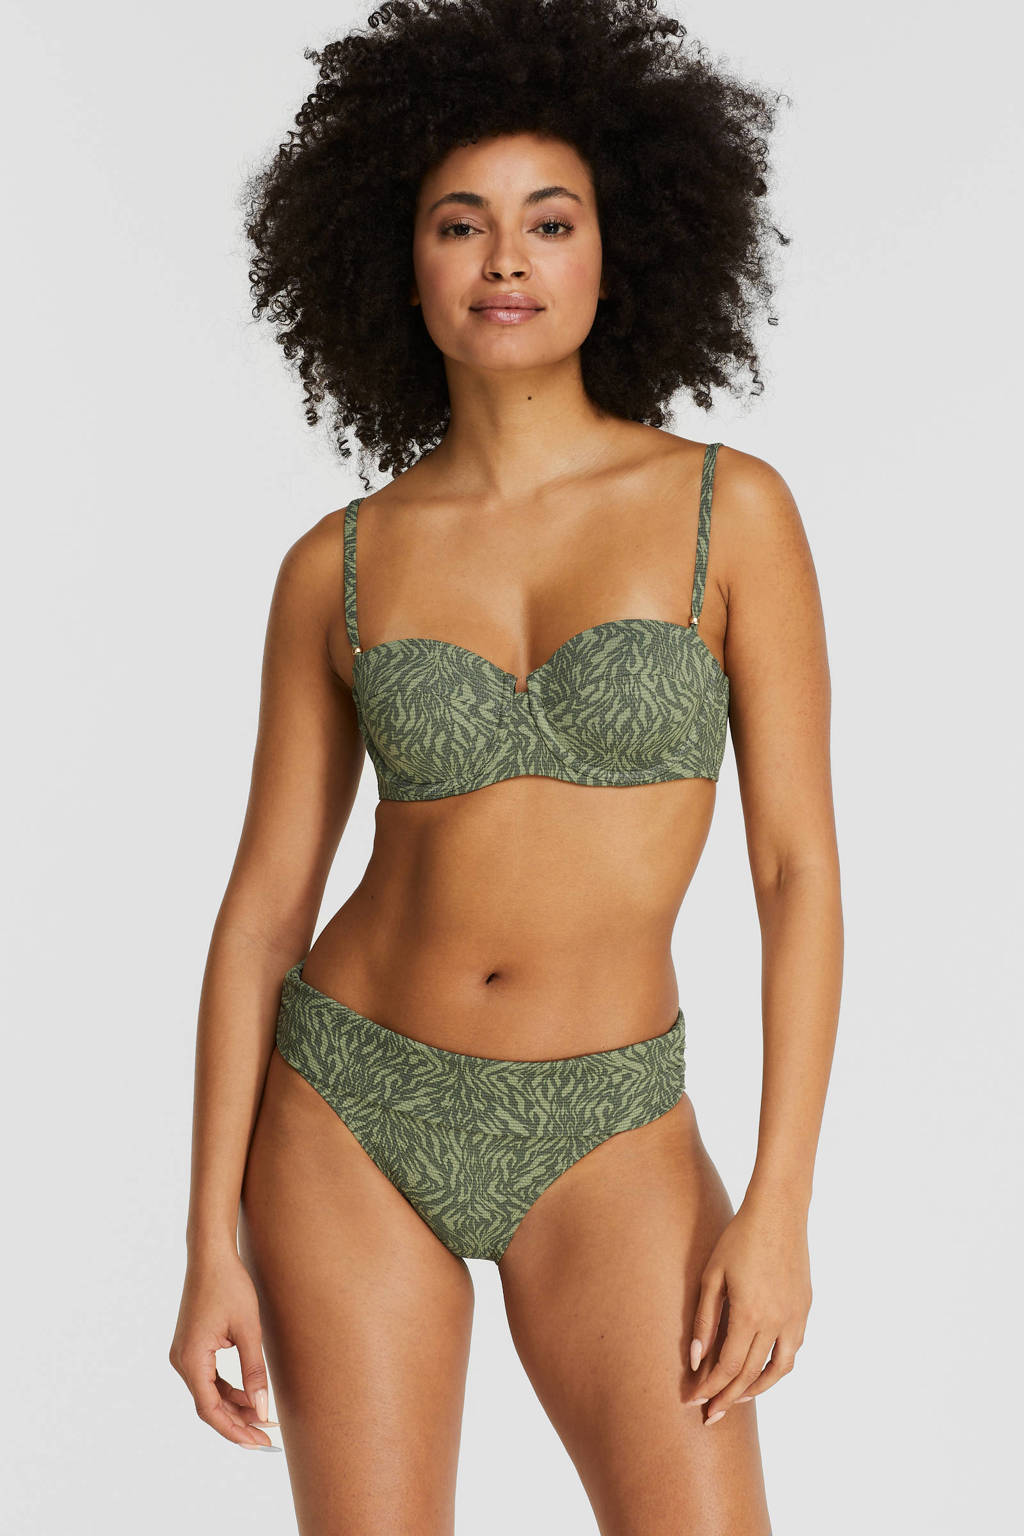 US dollar Ontvanger jazz BEACHWAVE omslag bikinibroekje met textuur en dierenprint groen/donkergroen  | wehkamp